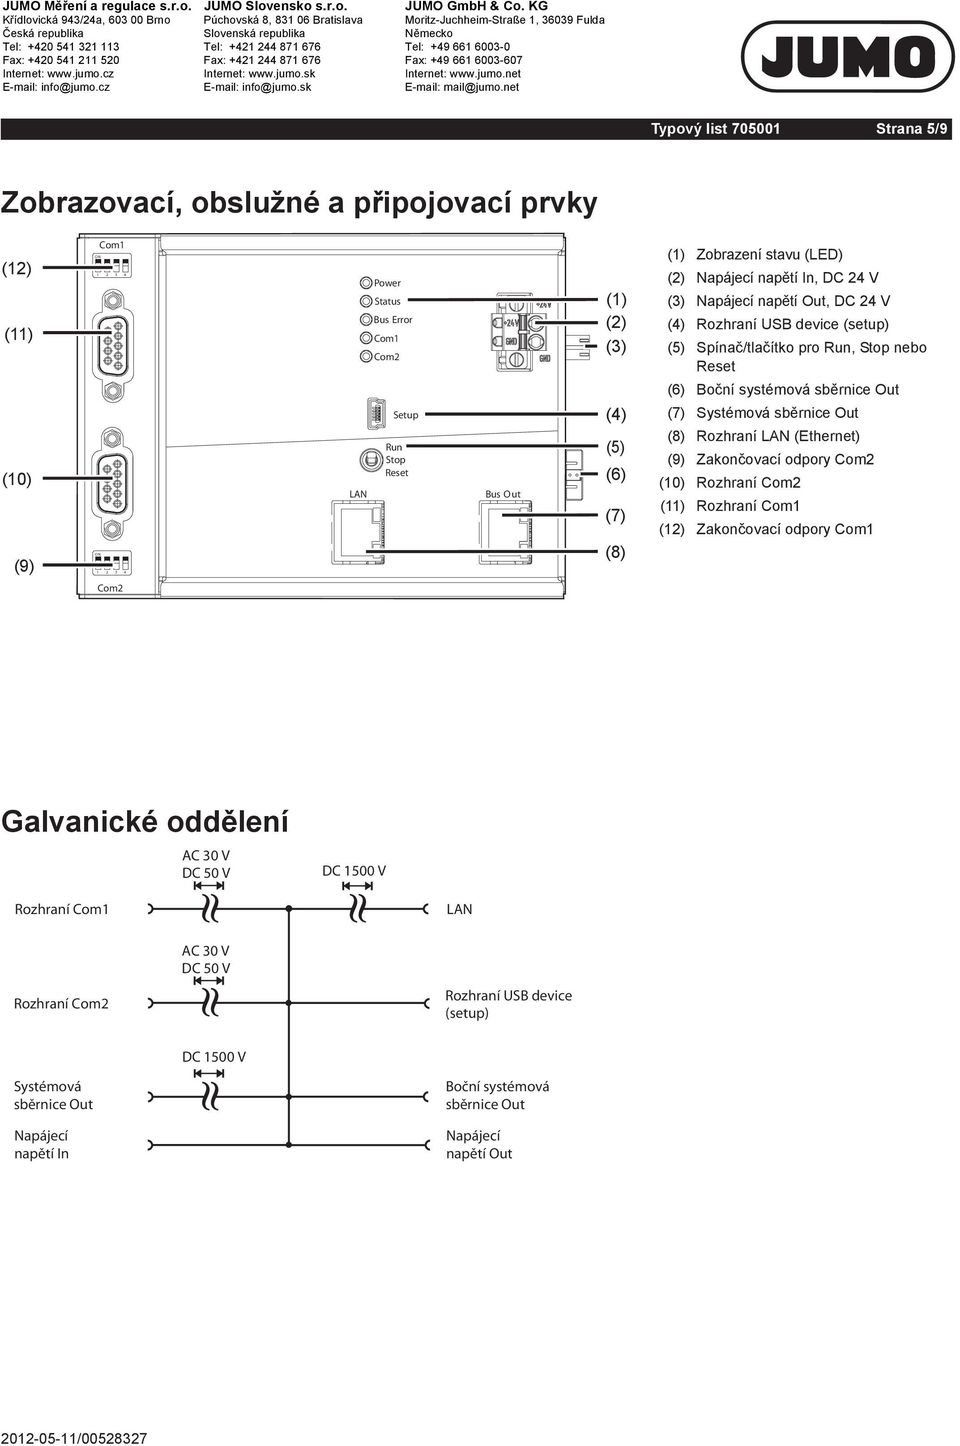 Reset (6) Boční systémová sběrnice Out (7) Systémová sběrnice Out (8) Rozhraní (Ethernet) (9) Zakončovací odpory (10) Rozhraní (11) Rozhraní (12) Zakončovací odpory Galvanické